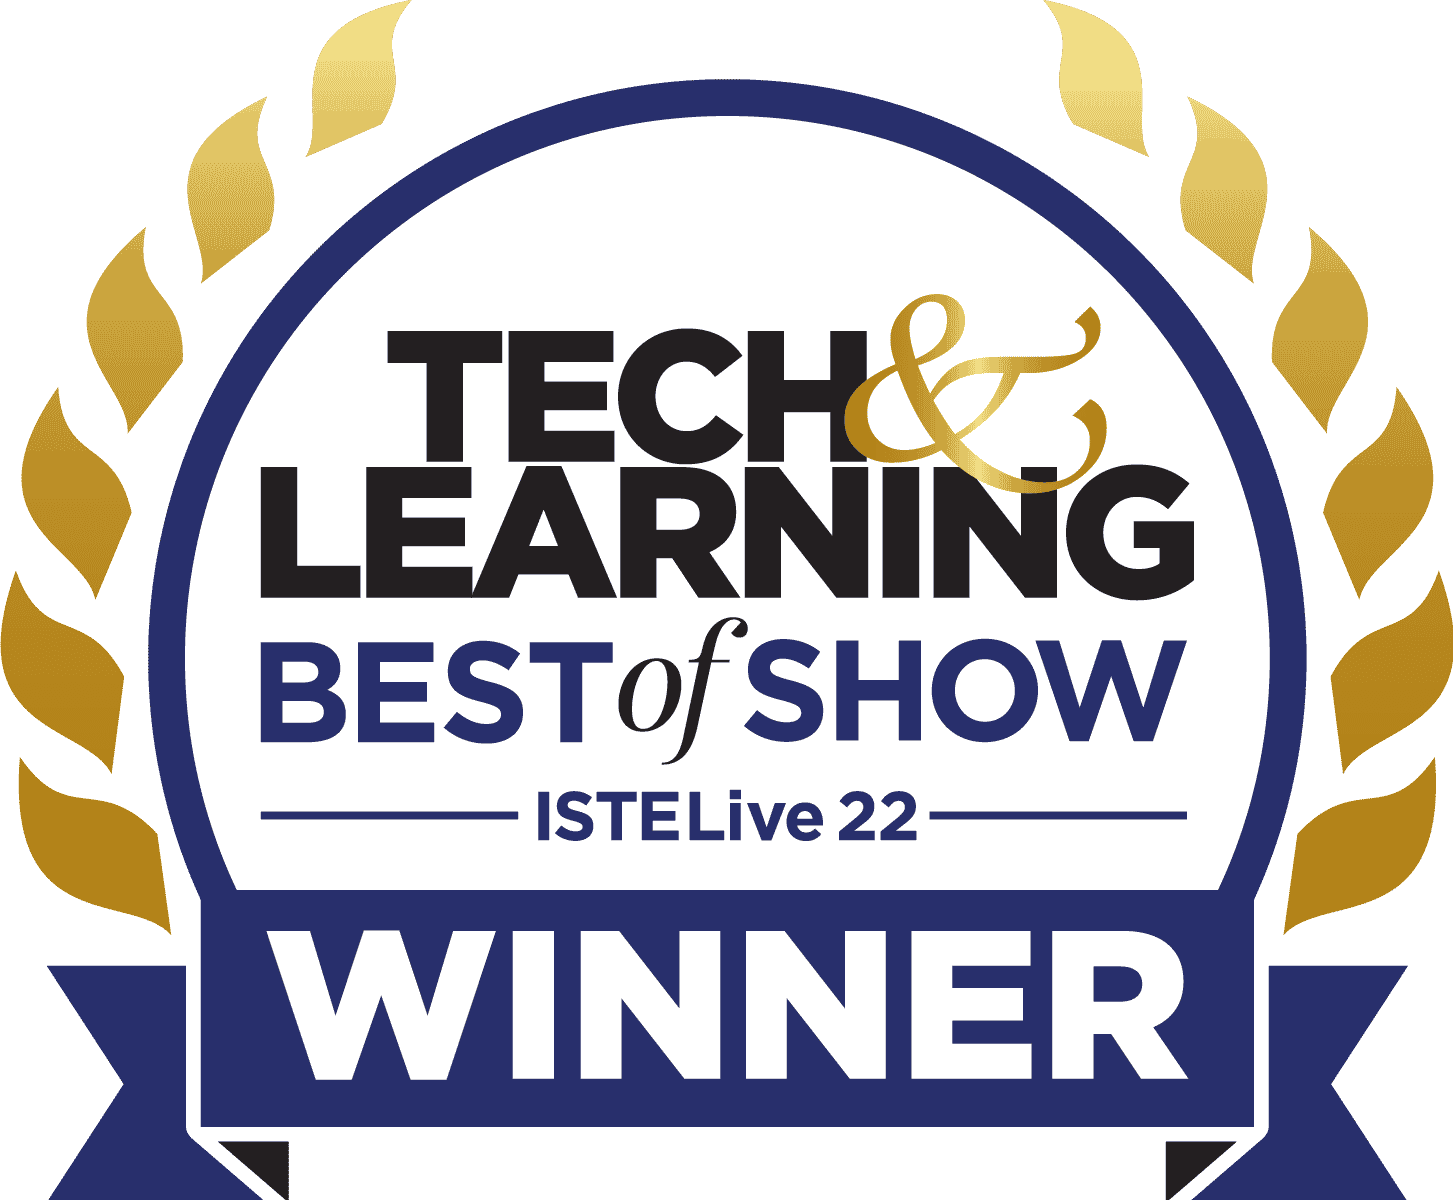 Tech Learning Show Award